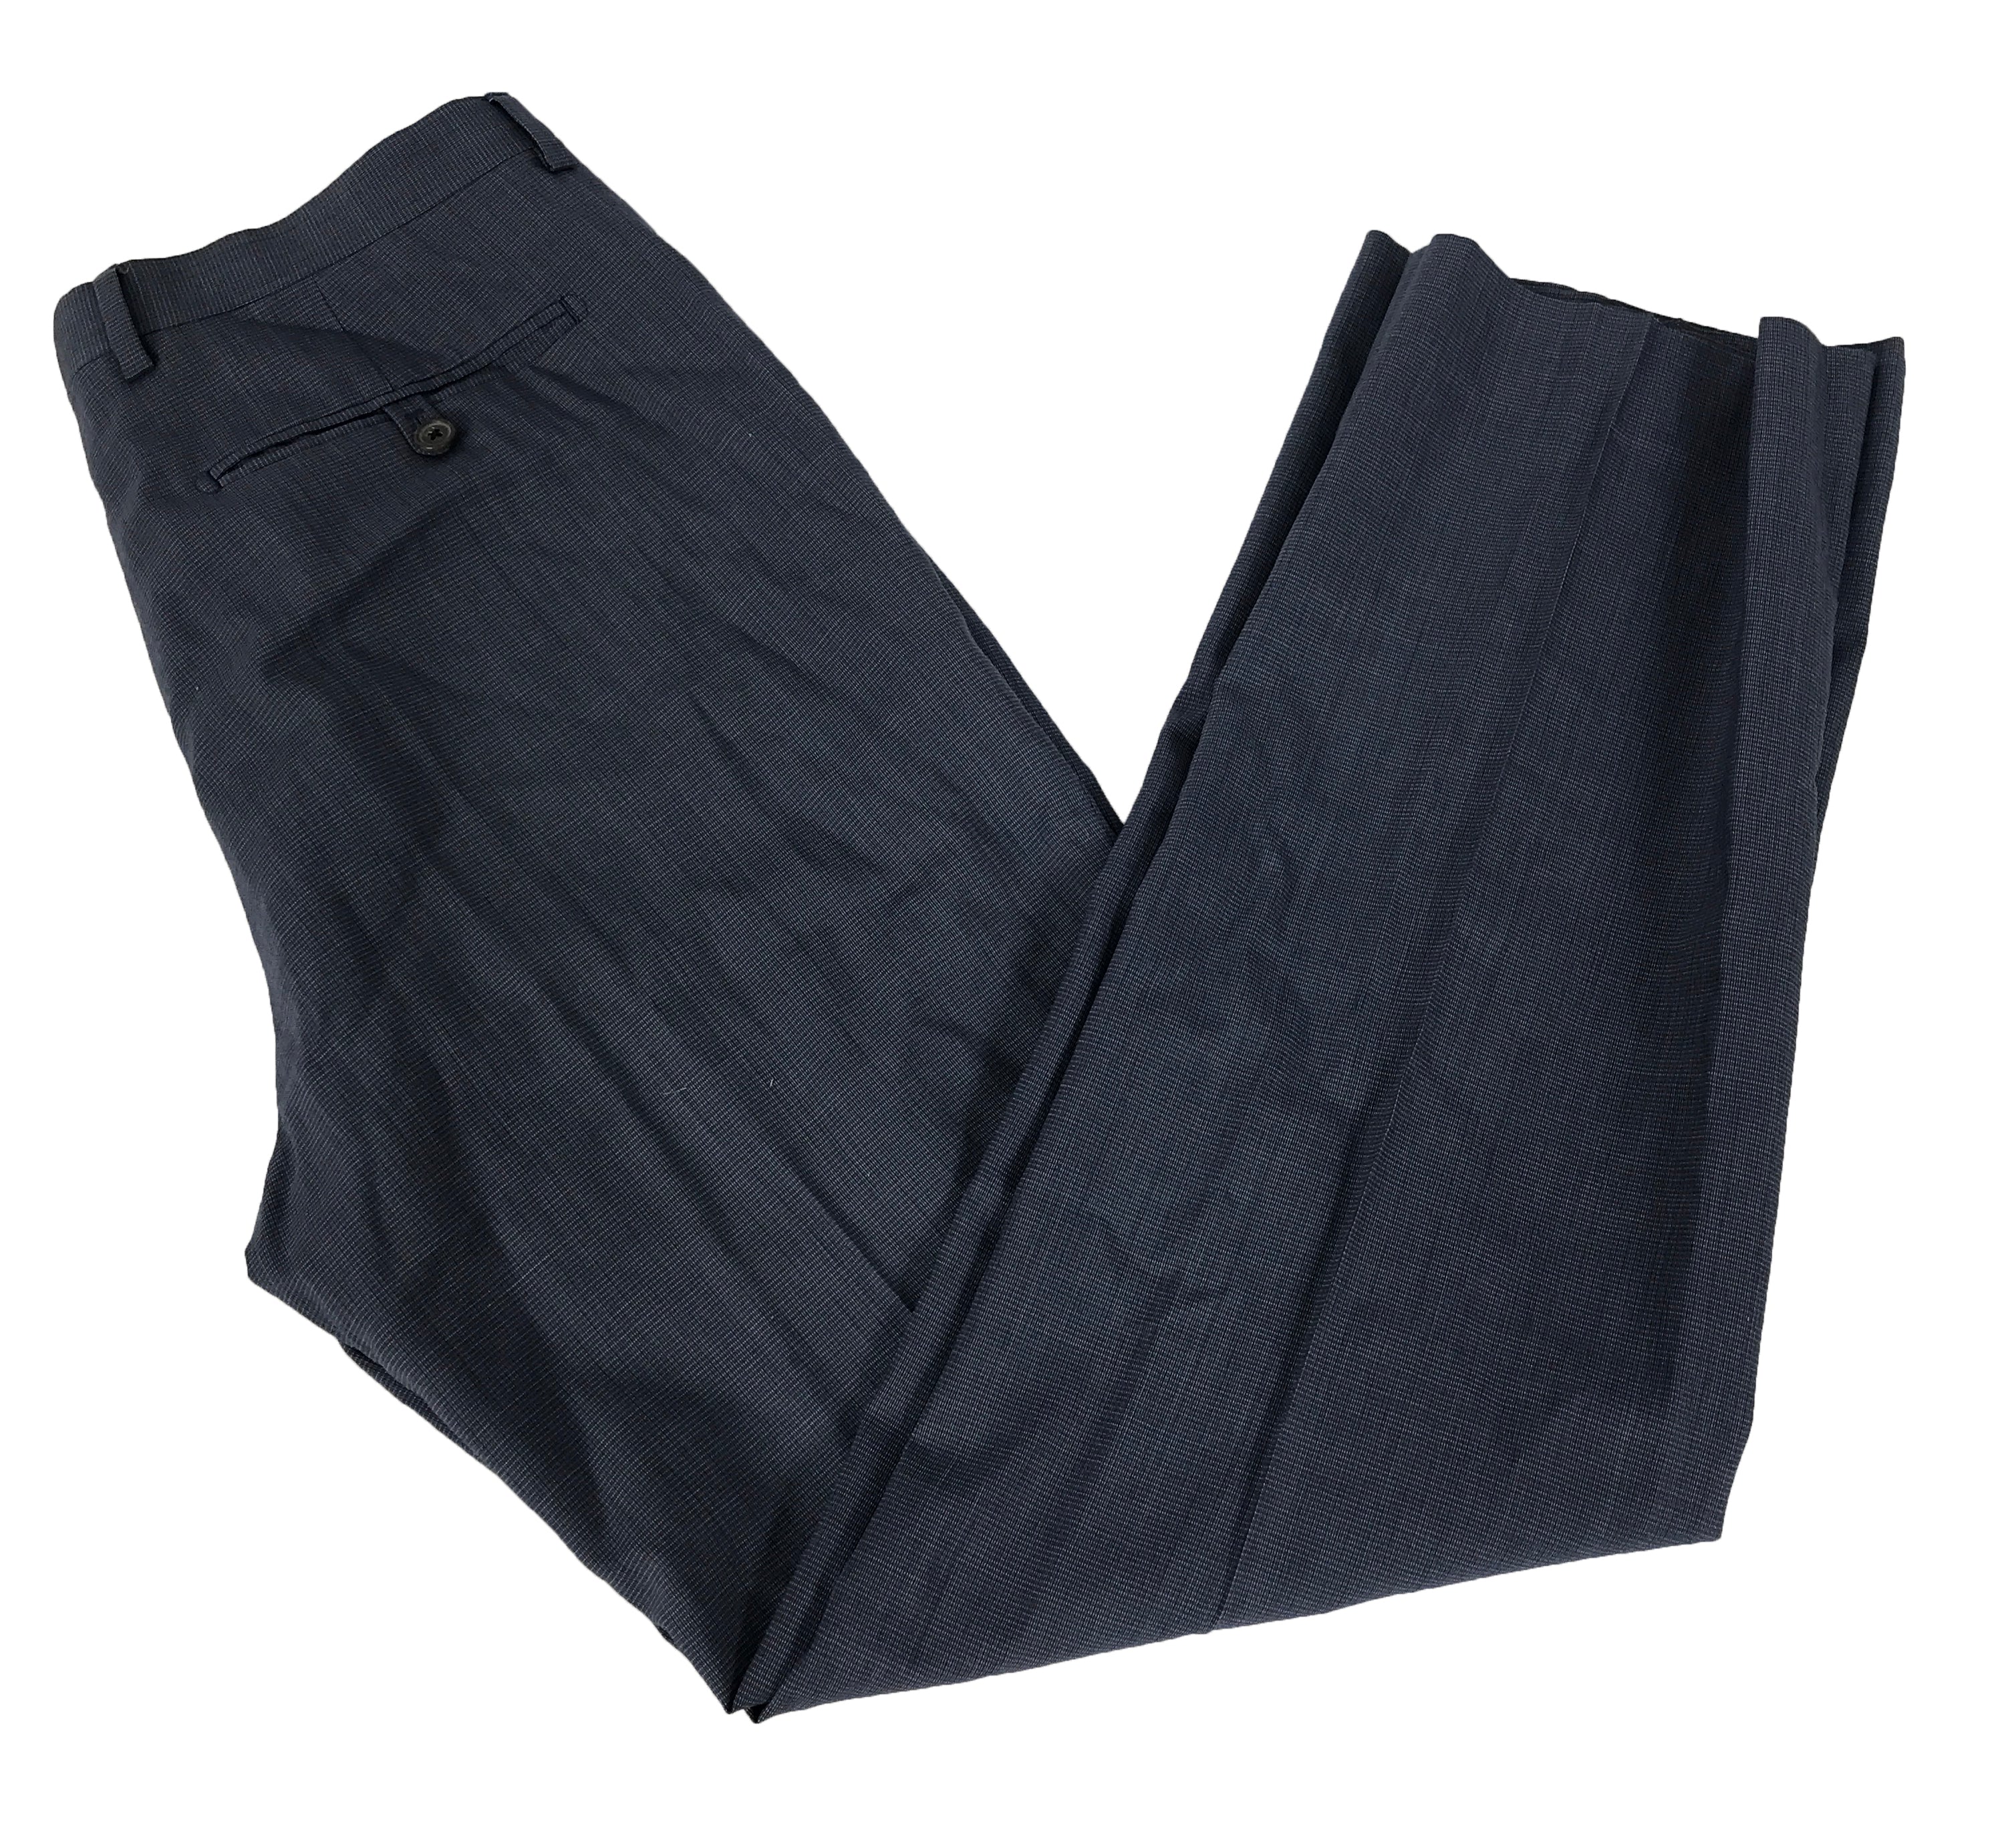 Banana Republic Blue Pants Men's Size 32x32